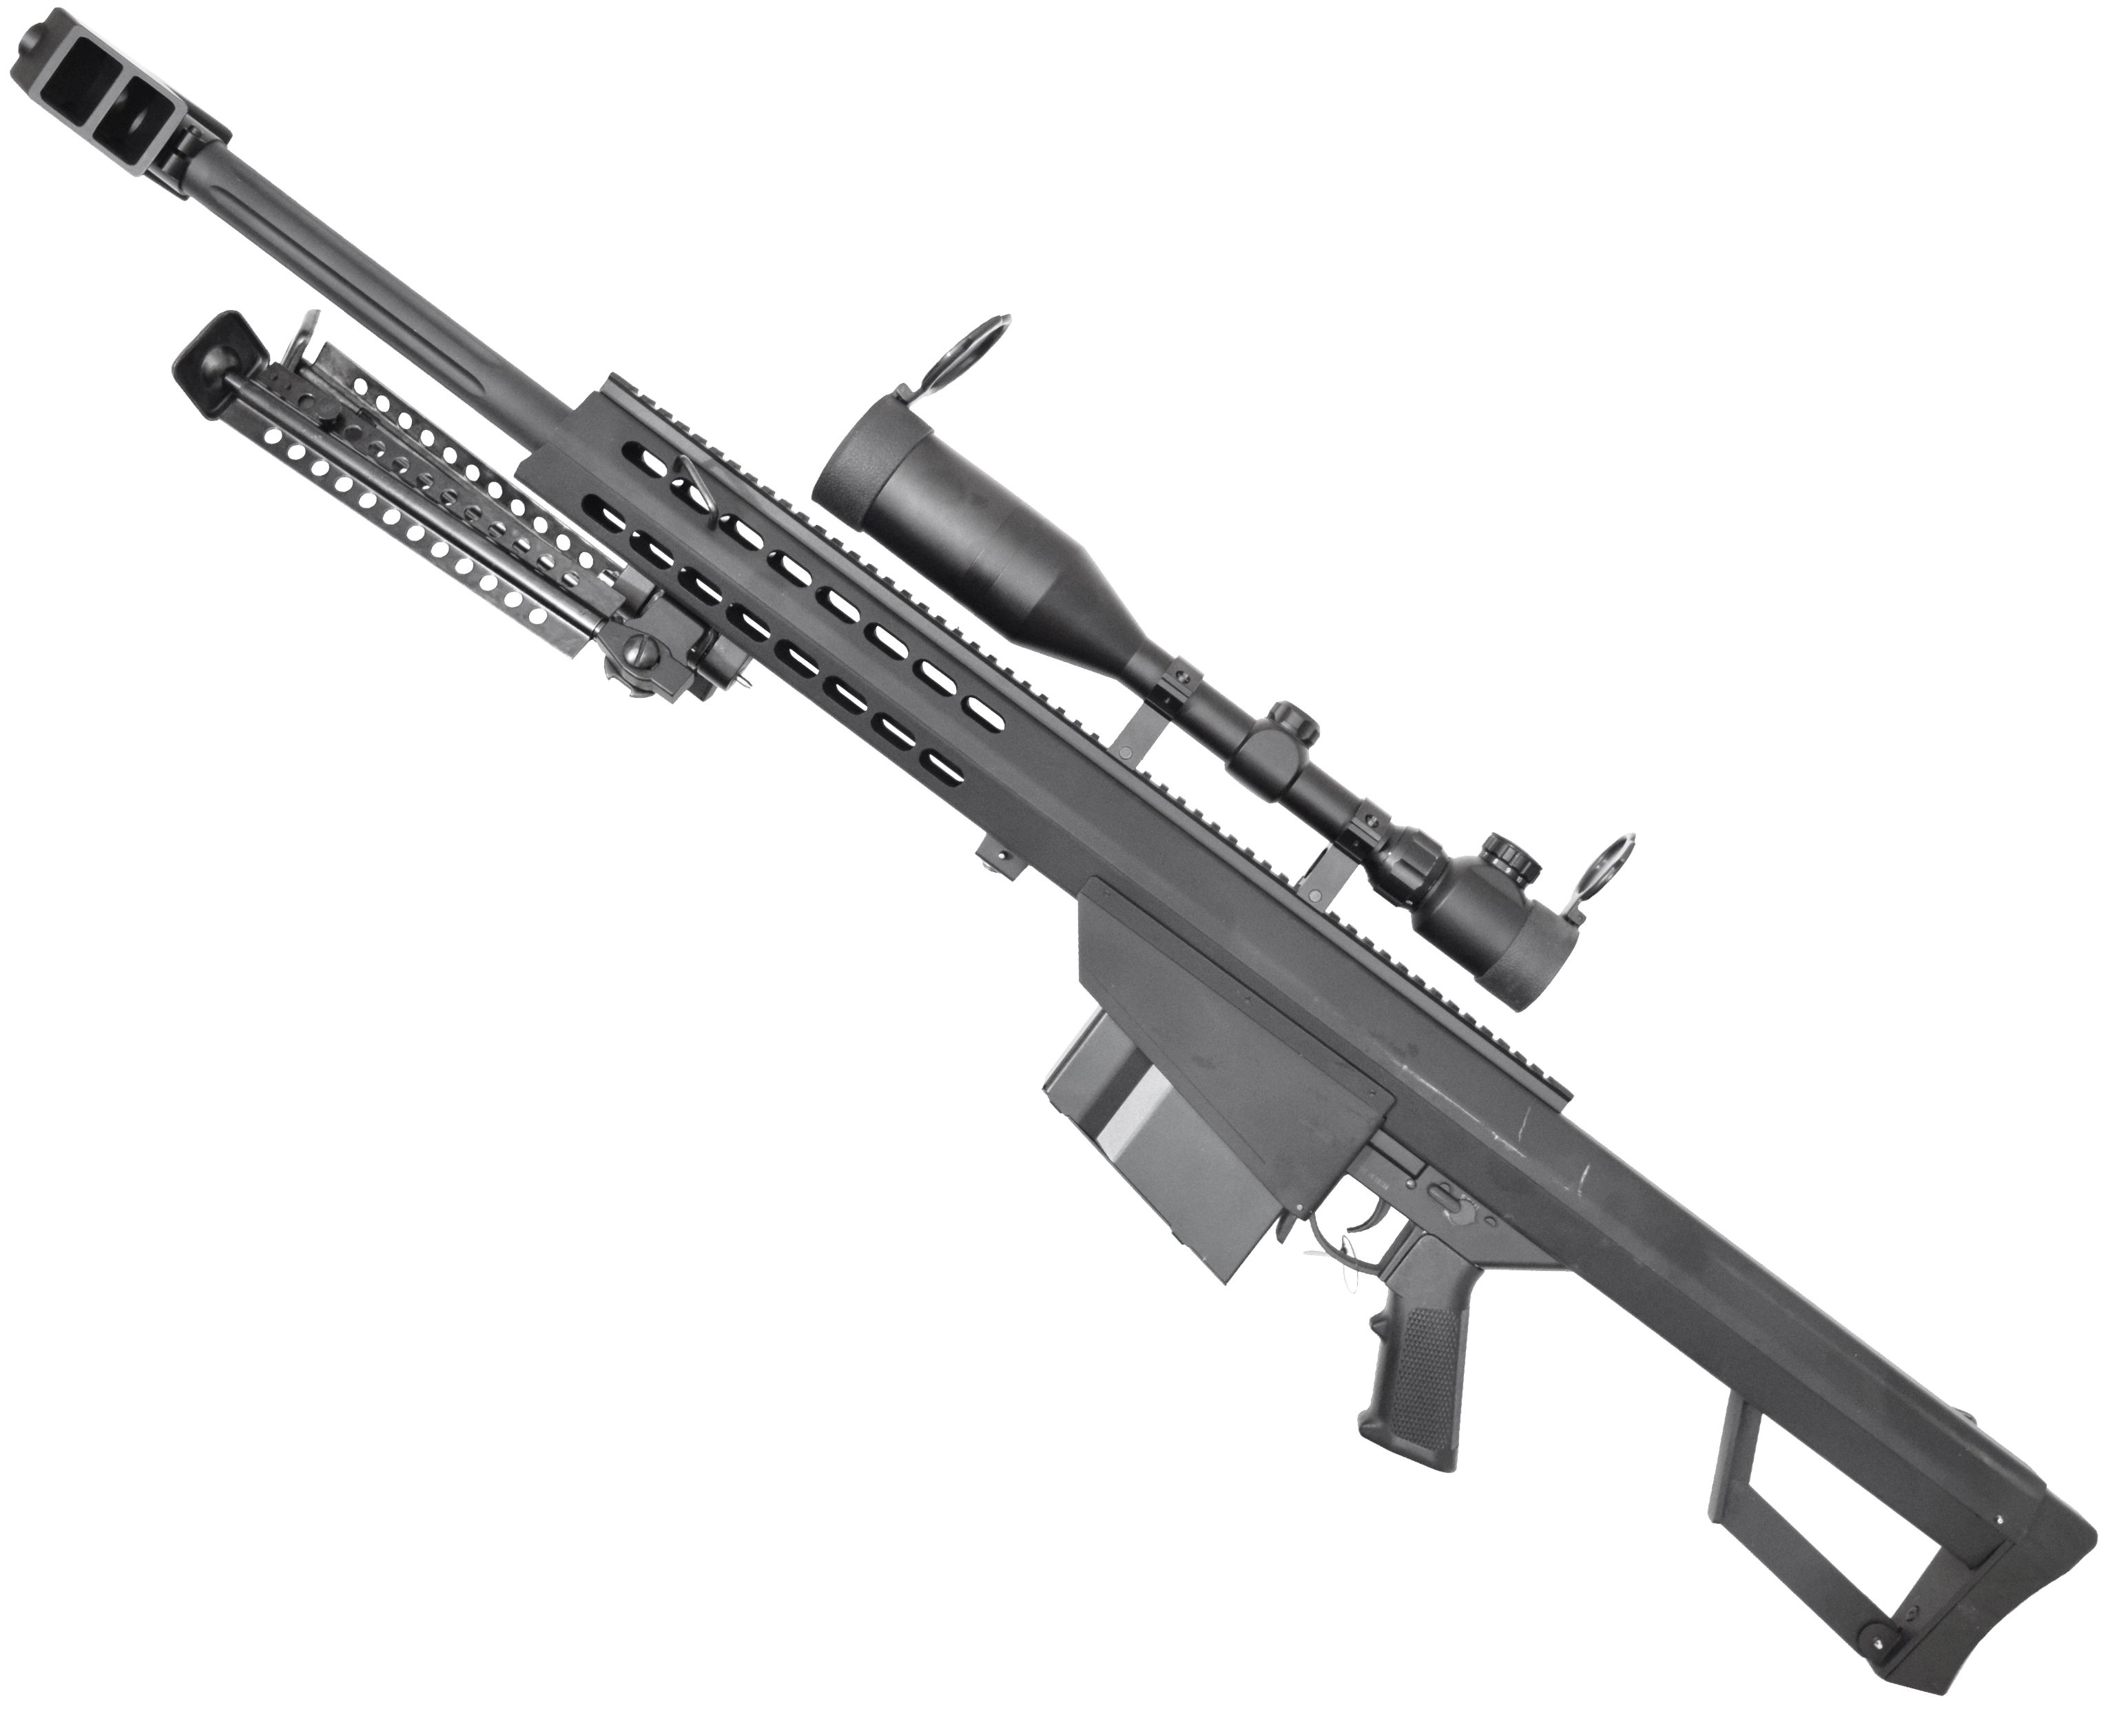 Страйкбольная винтовка Snow Wolf Barret M82A1 (Оптика, Сошки, SW-02A)  купить в Москве и СПБ, цена 57477 руб. Доставка по РФ!